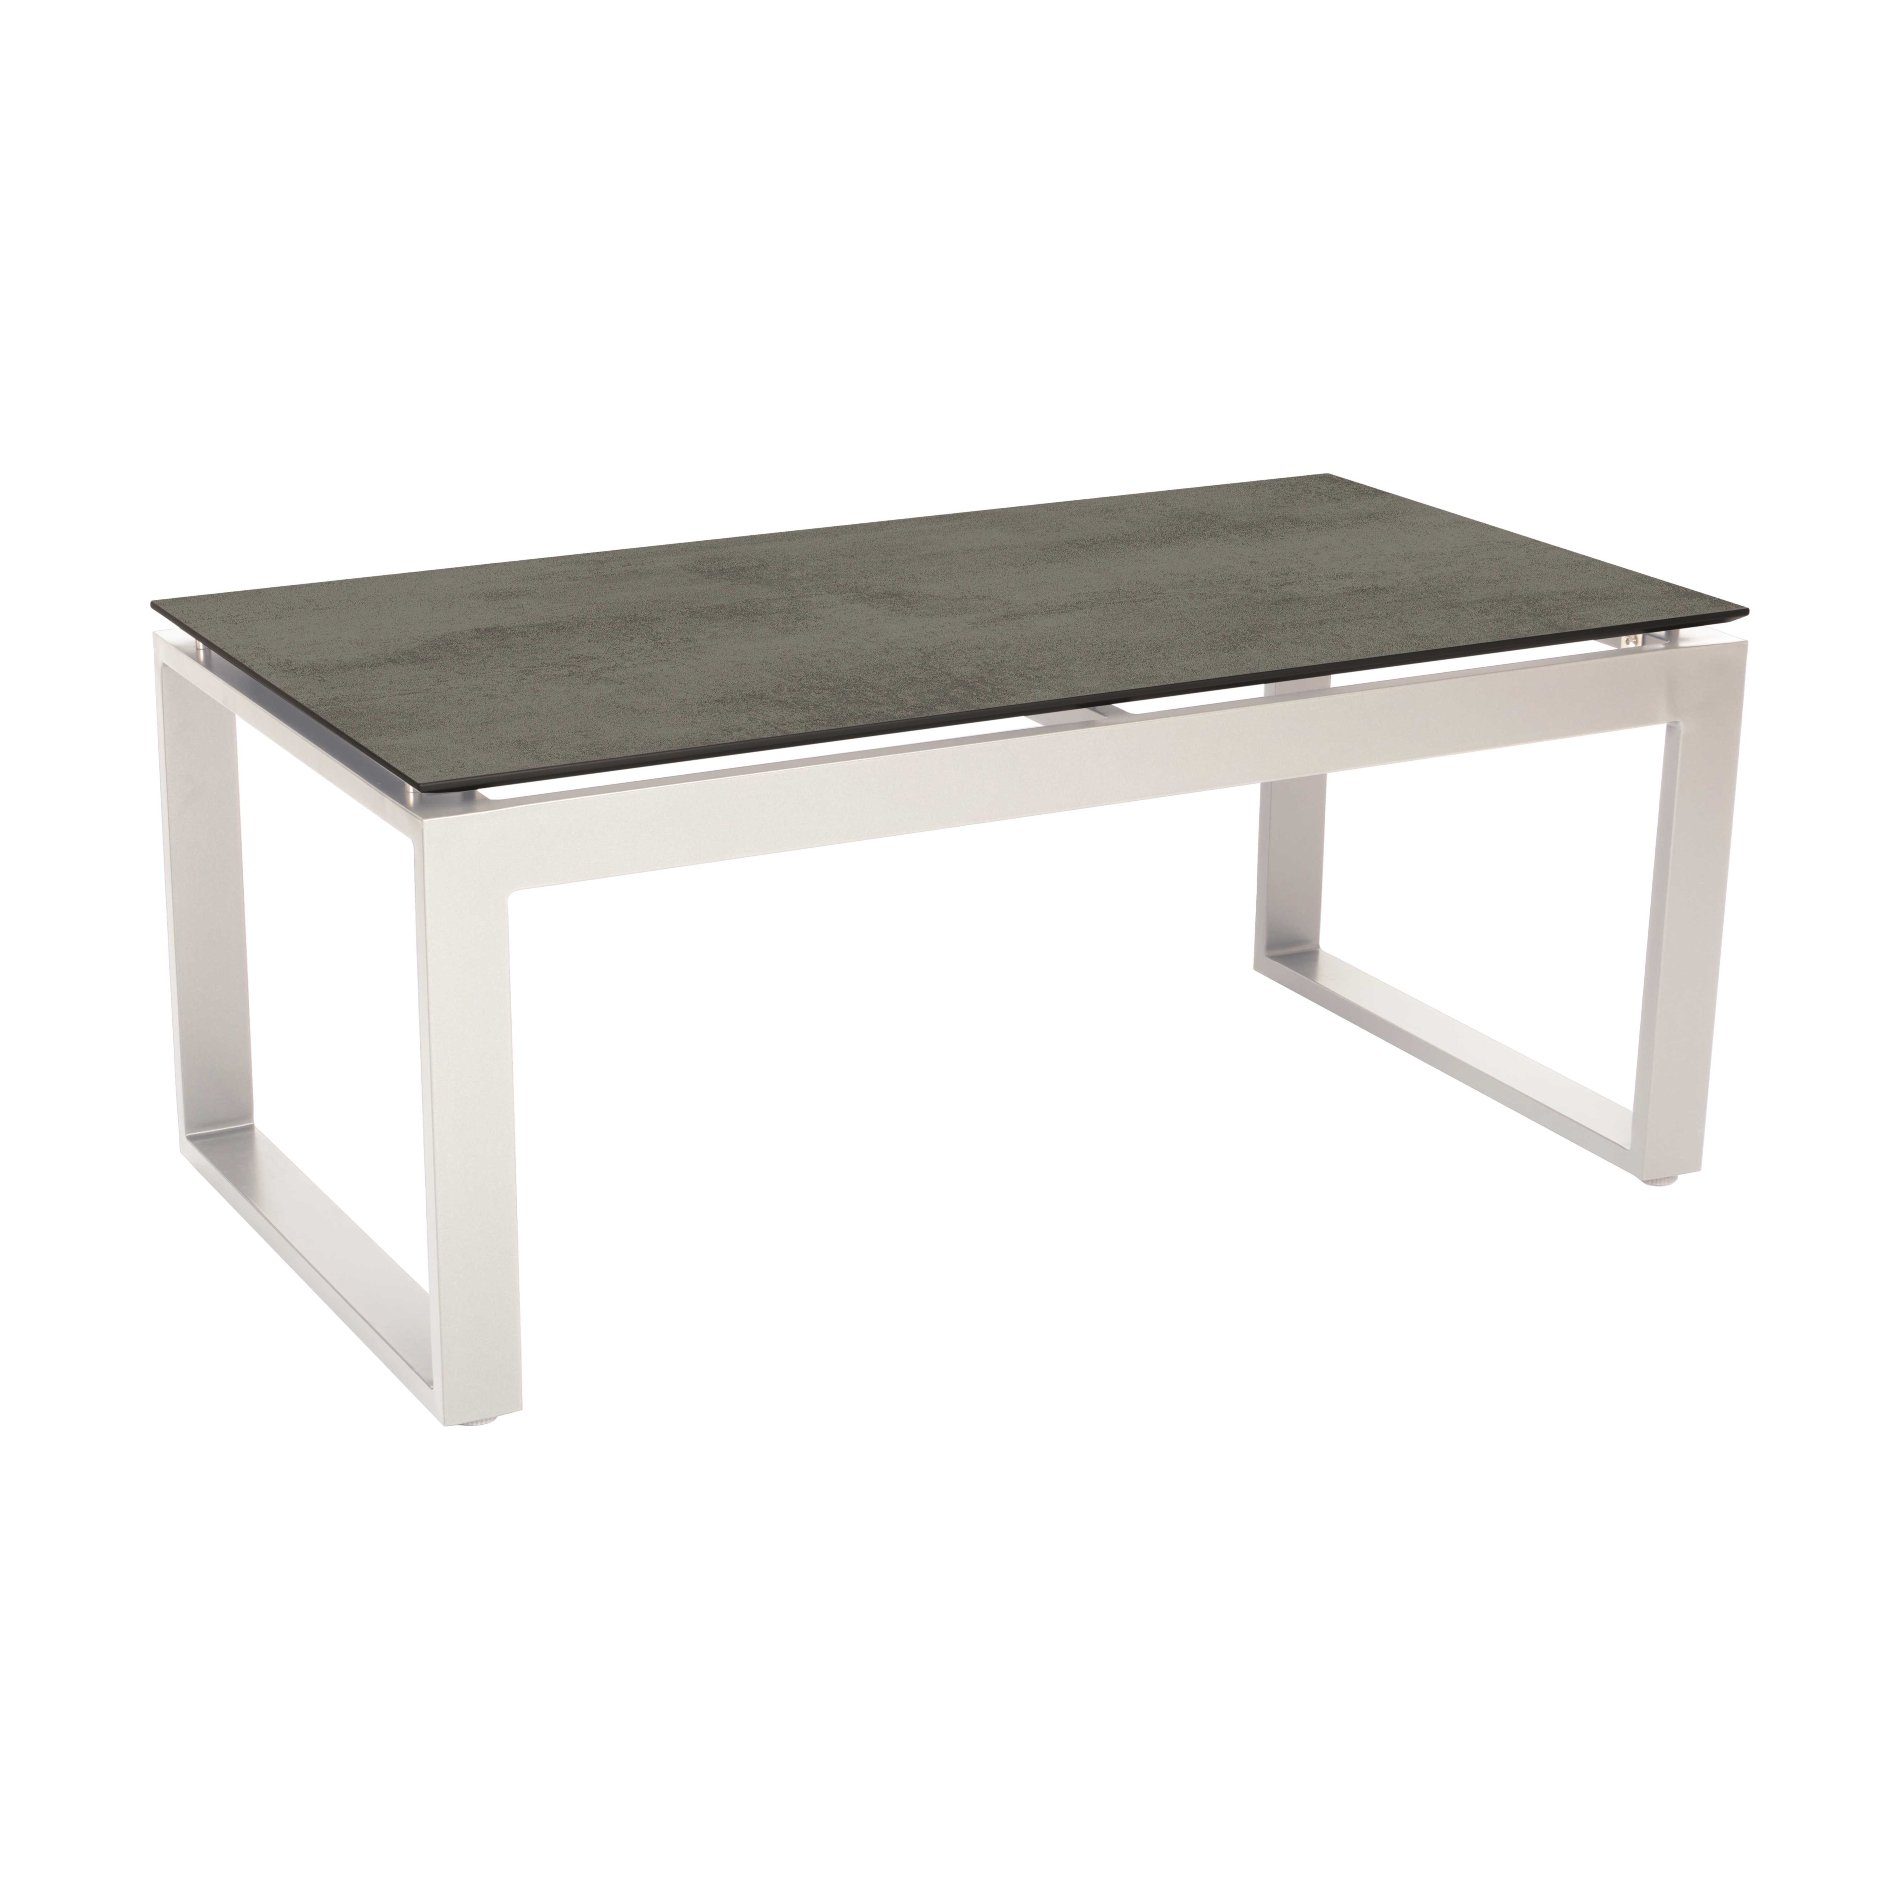 Stern "Allround" Beistelltisch, Gestell Aluminium weiß, Tischplatte HPL zement